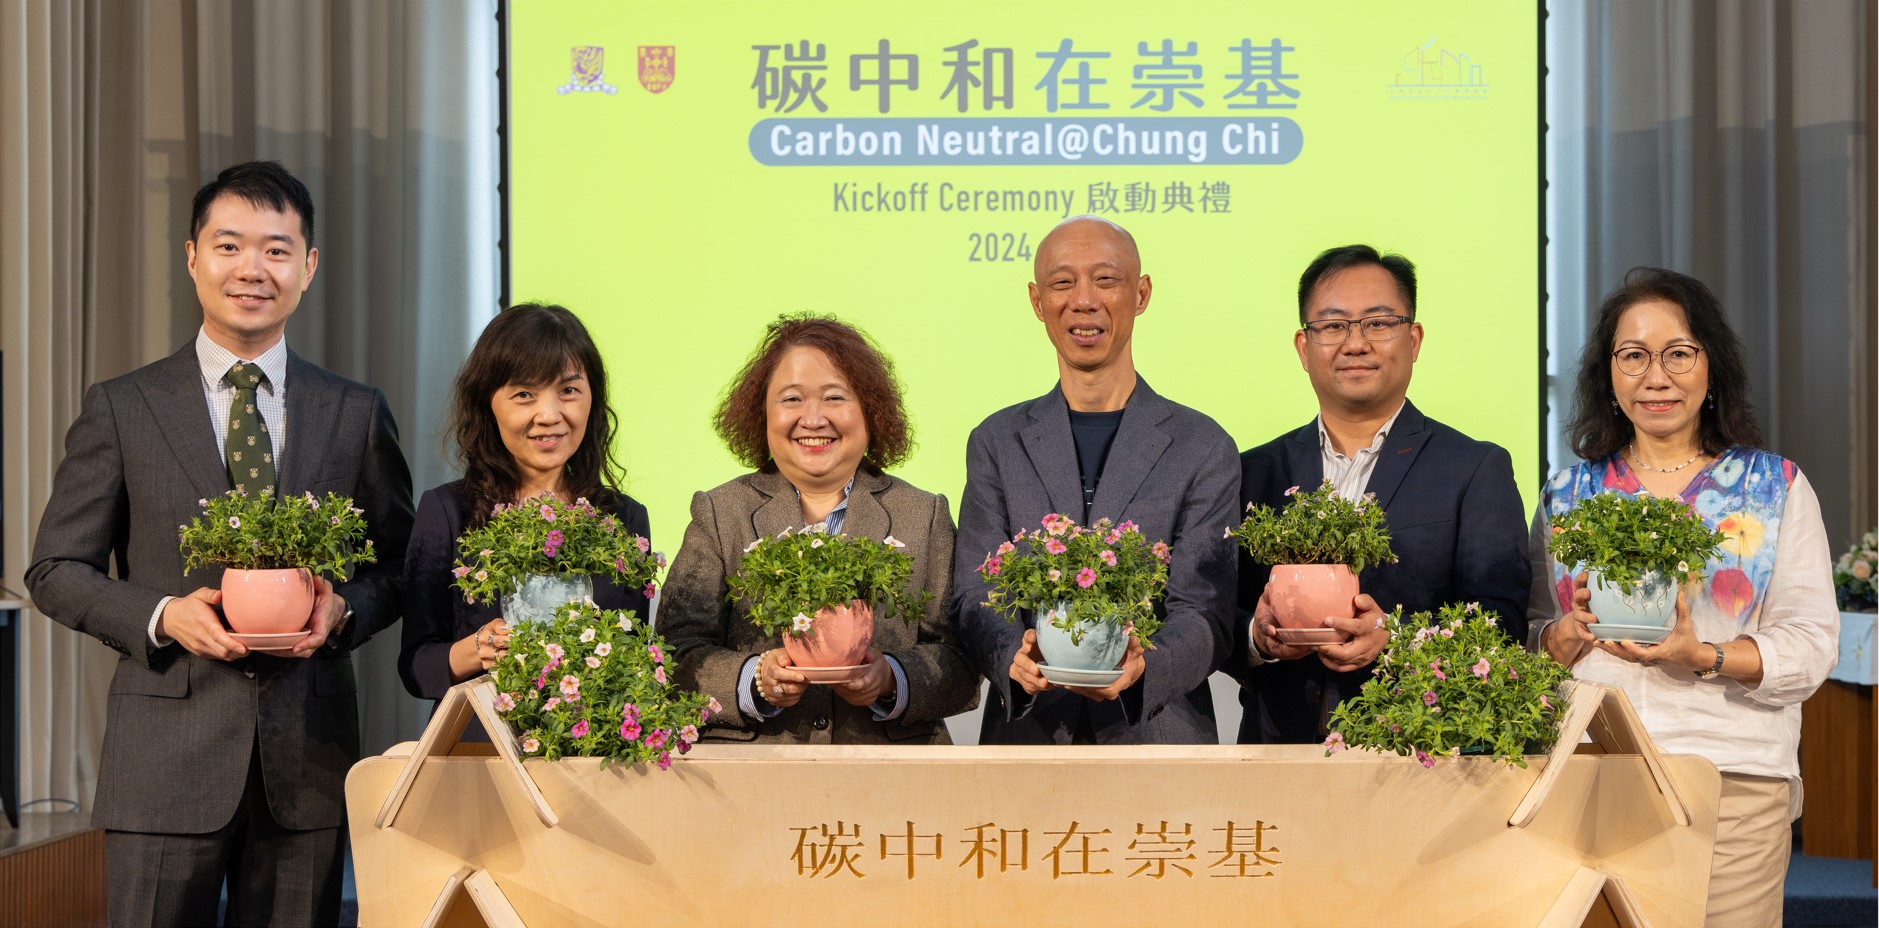 Carbon Neutral at Chung Chi